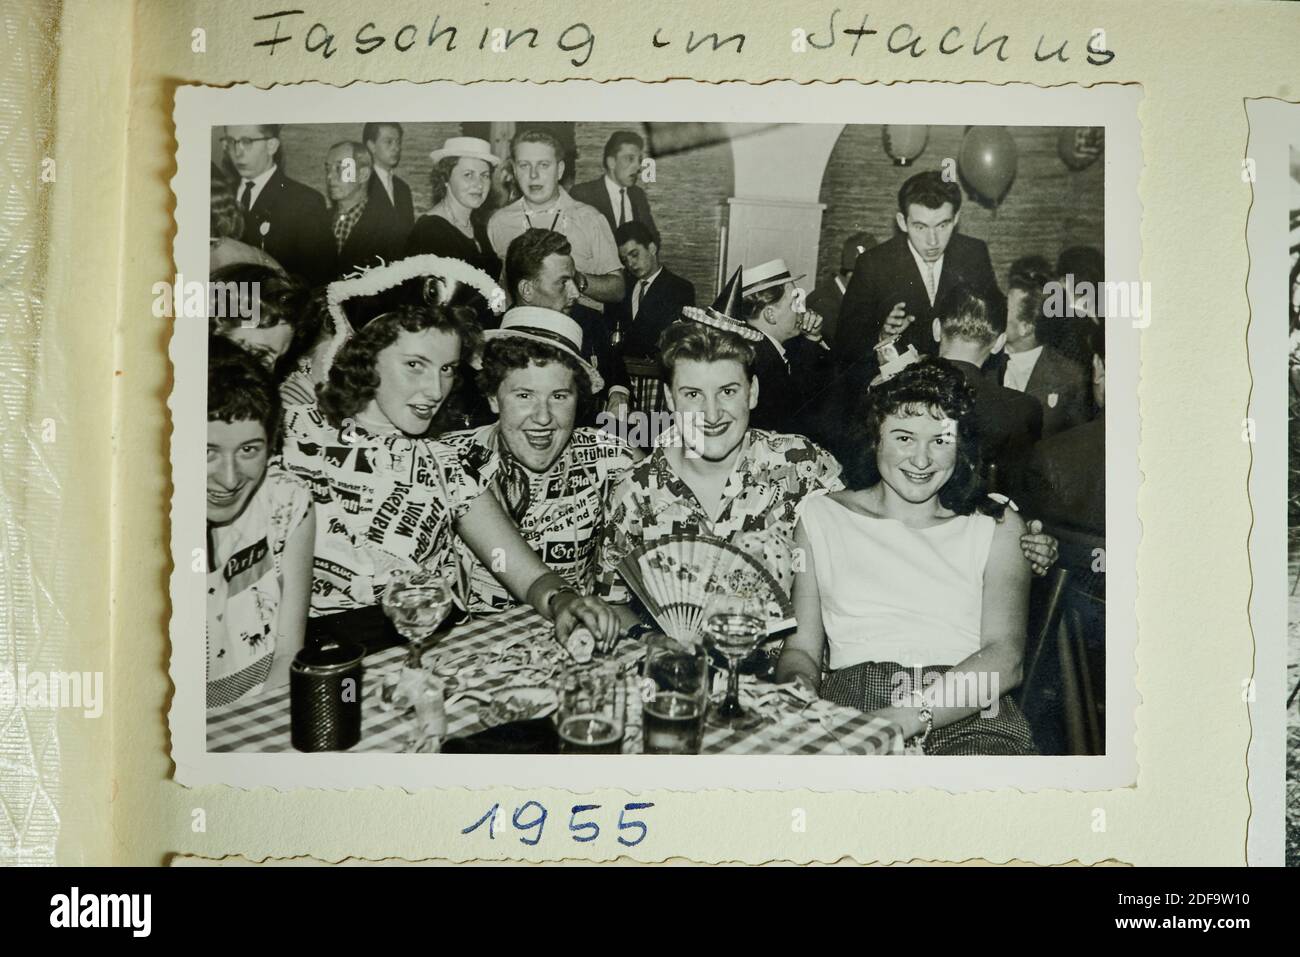 Historisches Foto: Karnevalsparty in Stachus Bar in Kaufbeuren, Deutschland 1955 Reproduktion in Marktoberdorf, Deutschland, 26. Oktober 2020. © Peter Schatz / Alamy Stock Photos Stockfoto